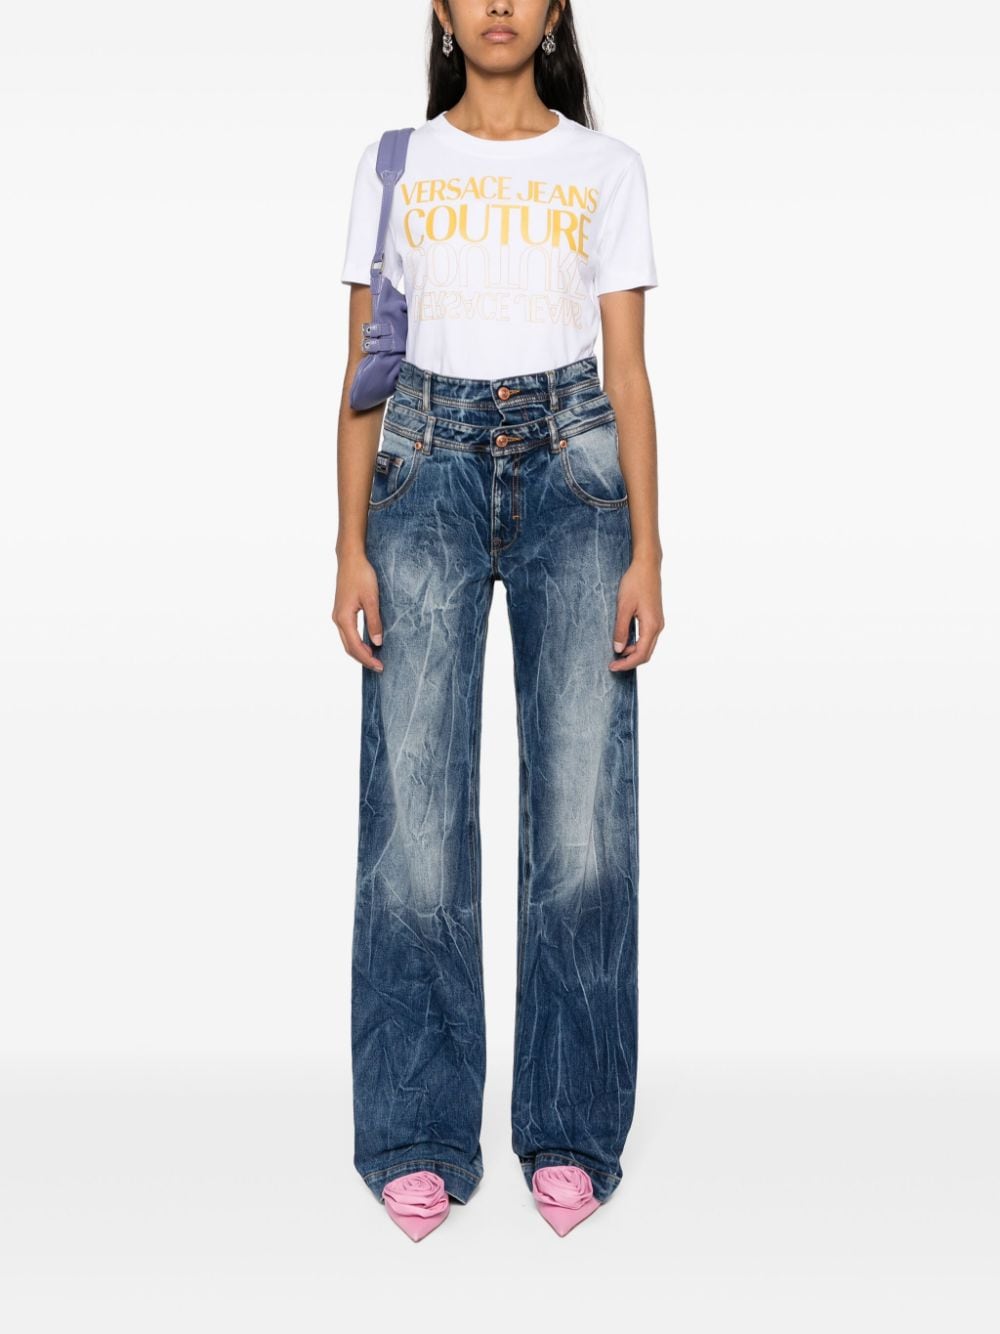 Versace Jeans Couture Katoenen T-shirt met logo Wit